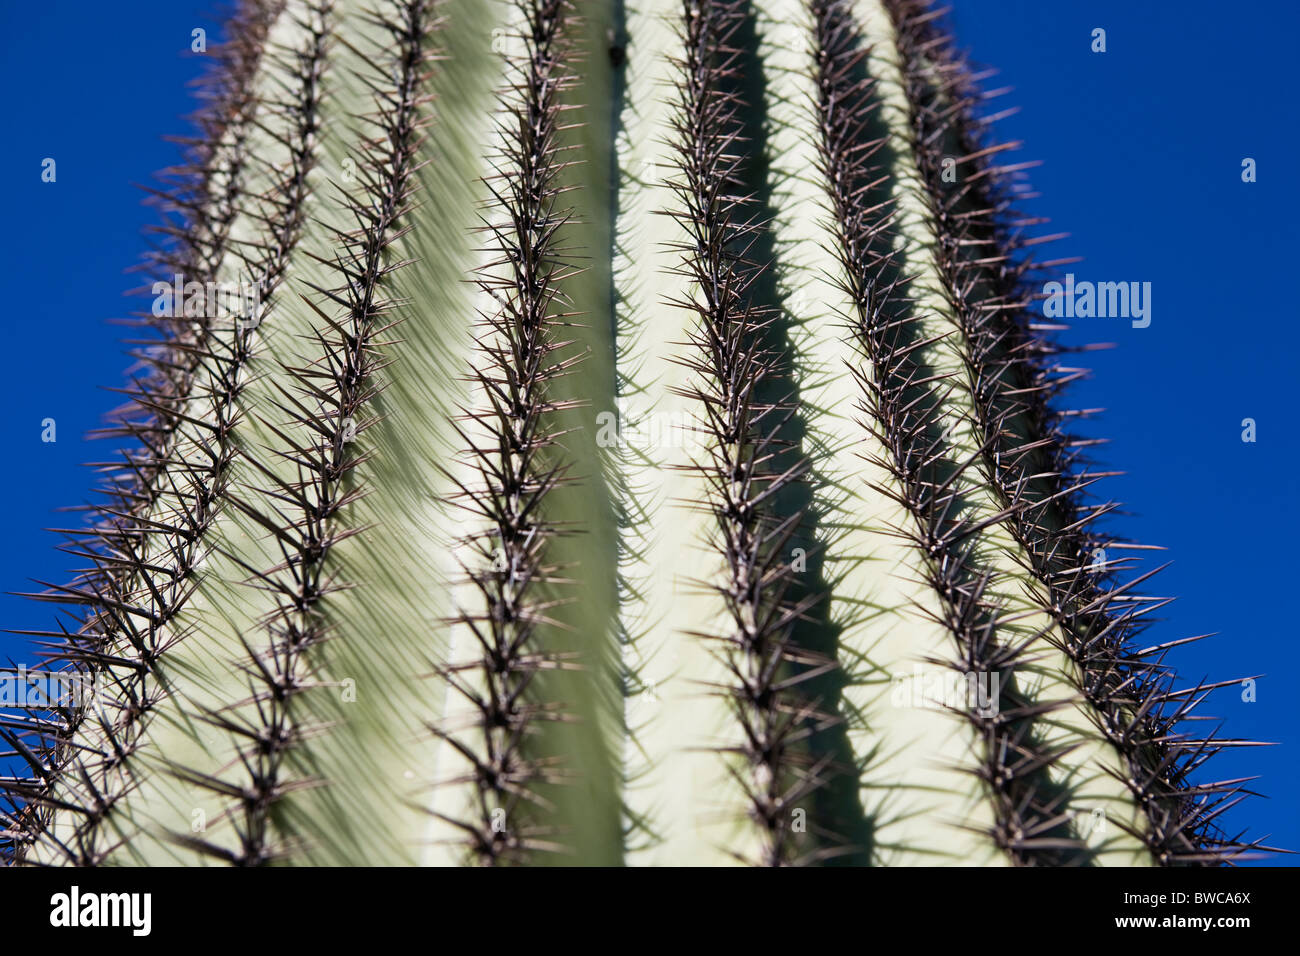 USA, Arizona, Phoenix, Cactus against blue sky Banque D'Images